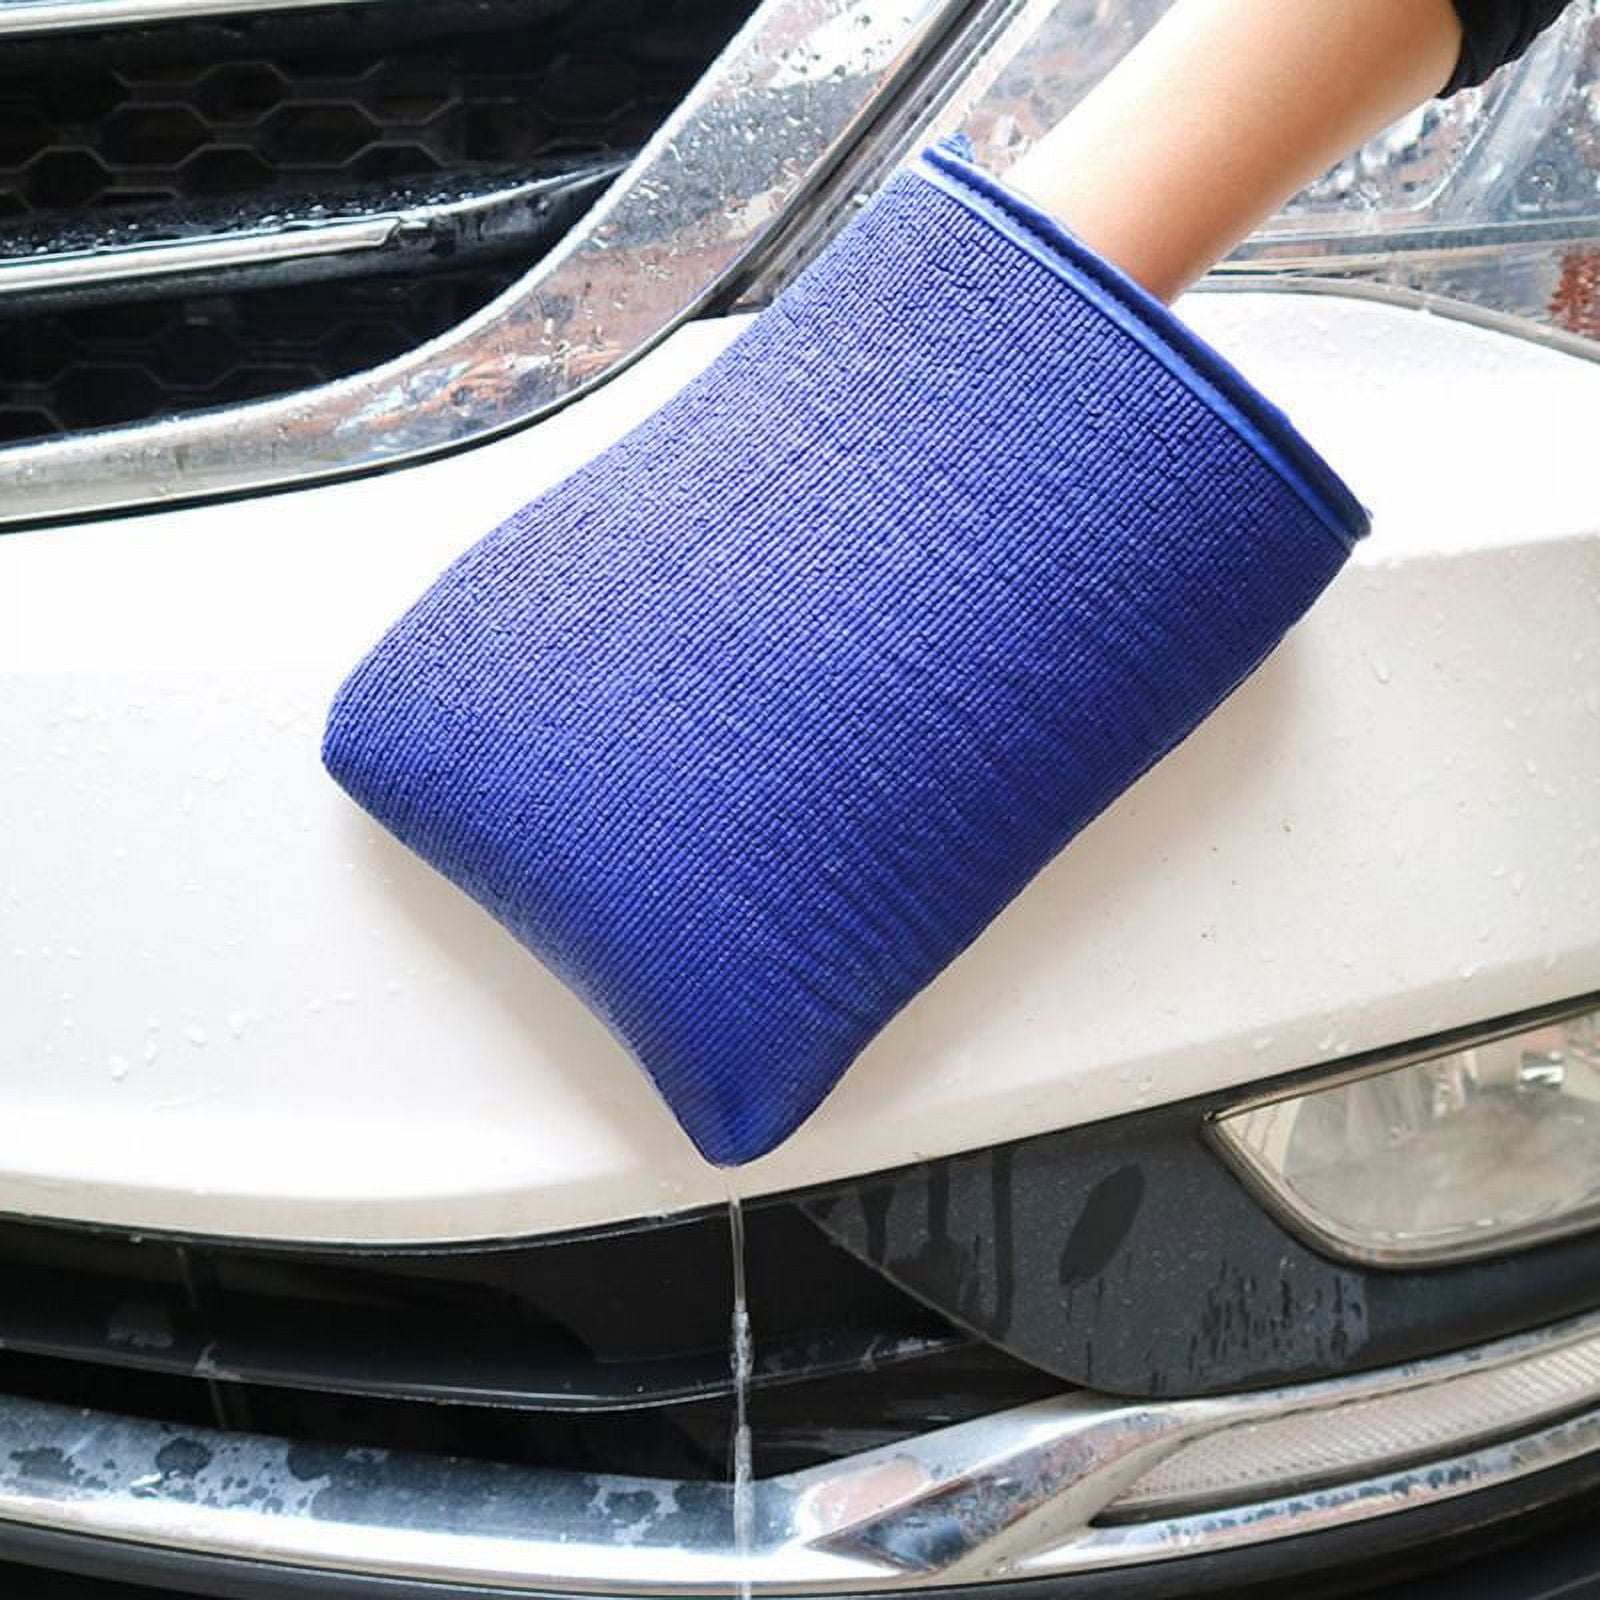 Milisten Car Accesories Car Wash Mitt Cars Accessories Car Accessory Car  Cleaning Accessories Car Wash Towel Cleaning Gloves Clean Towels for Face  Car